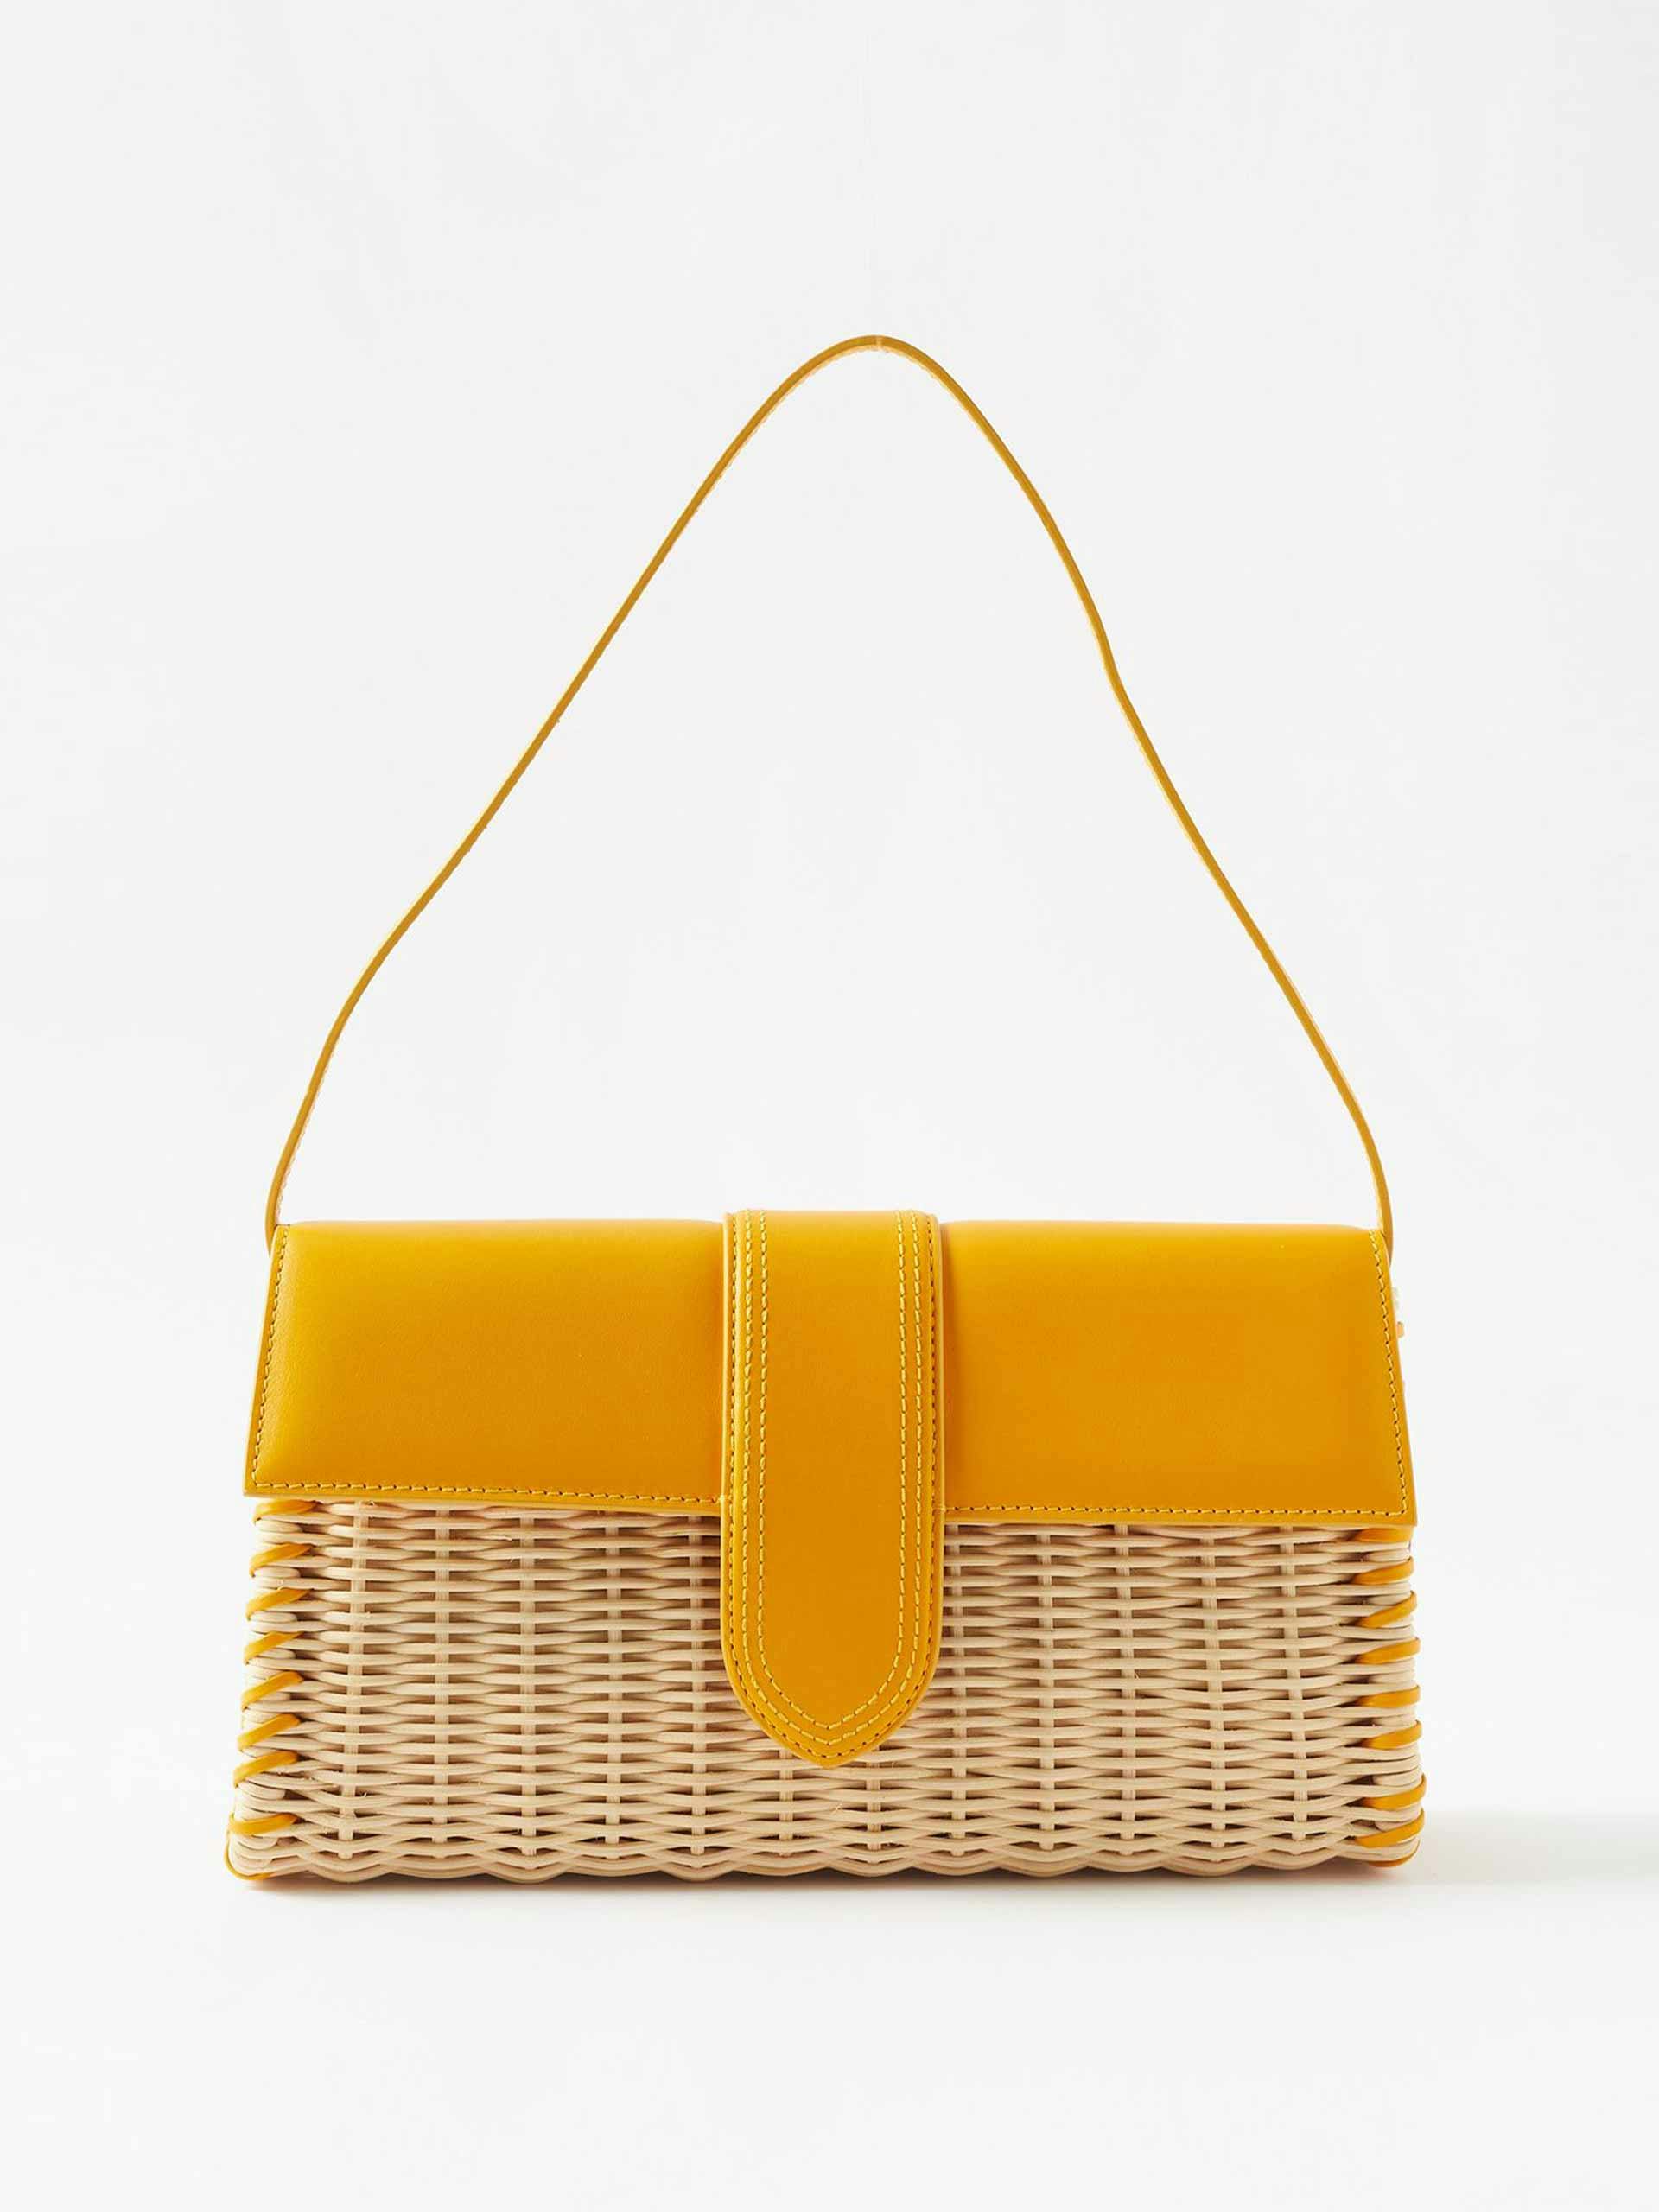 Yellow wicker shoulder bag